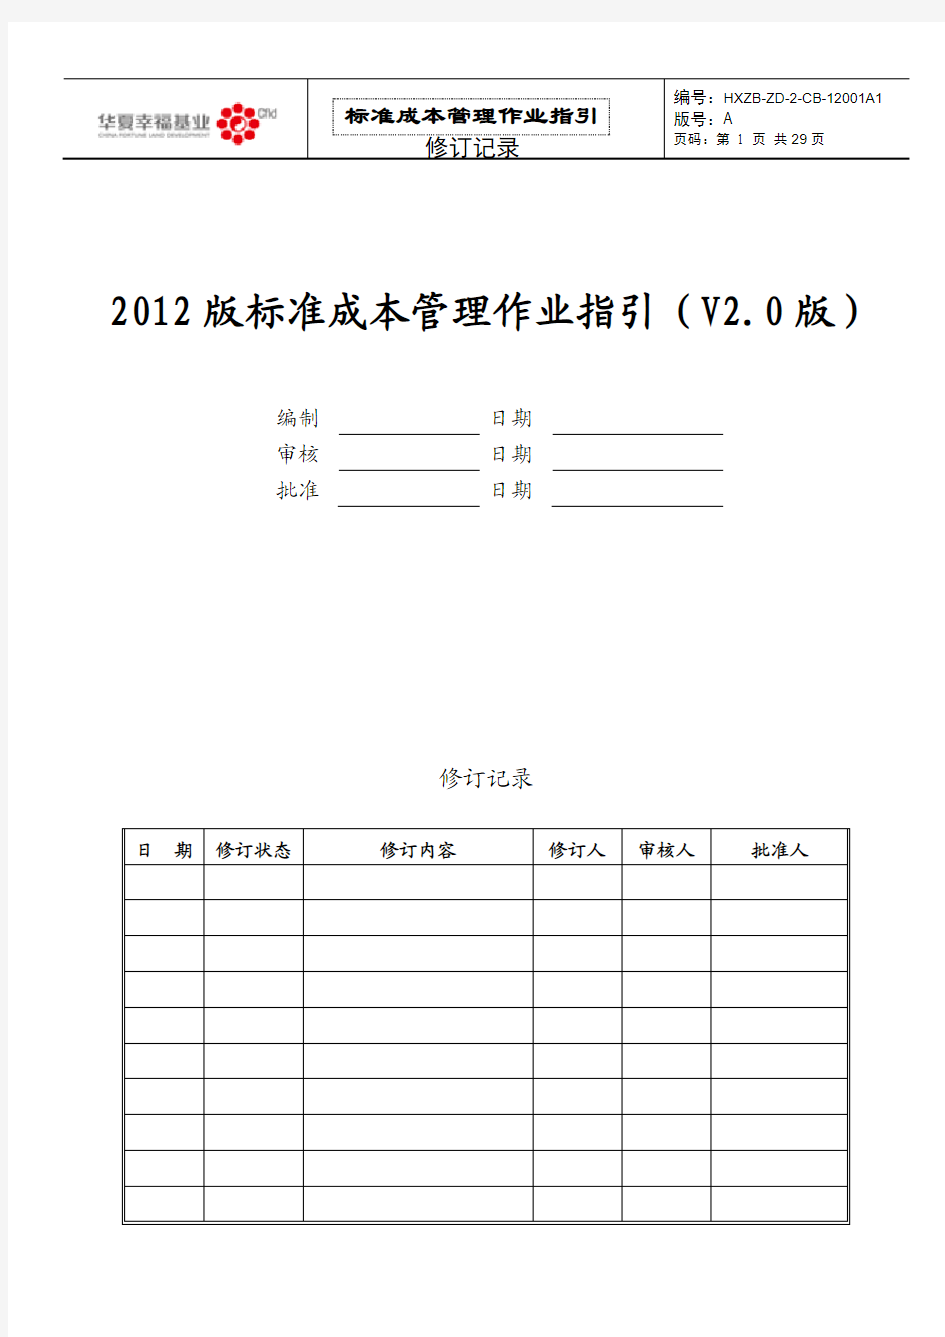 华夏幸福基业标准成本管理作业指引(V2.0版本-地产分册)